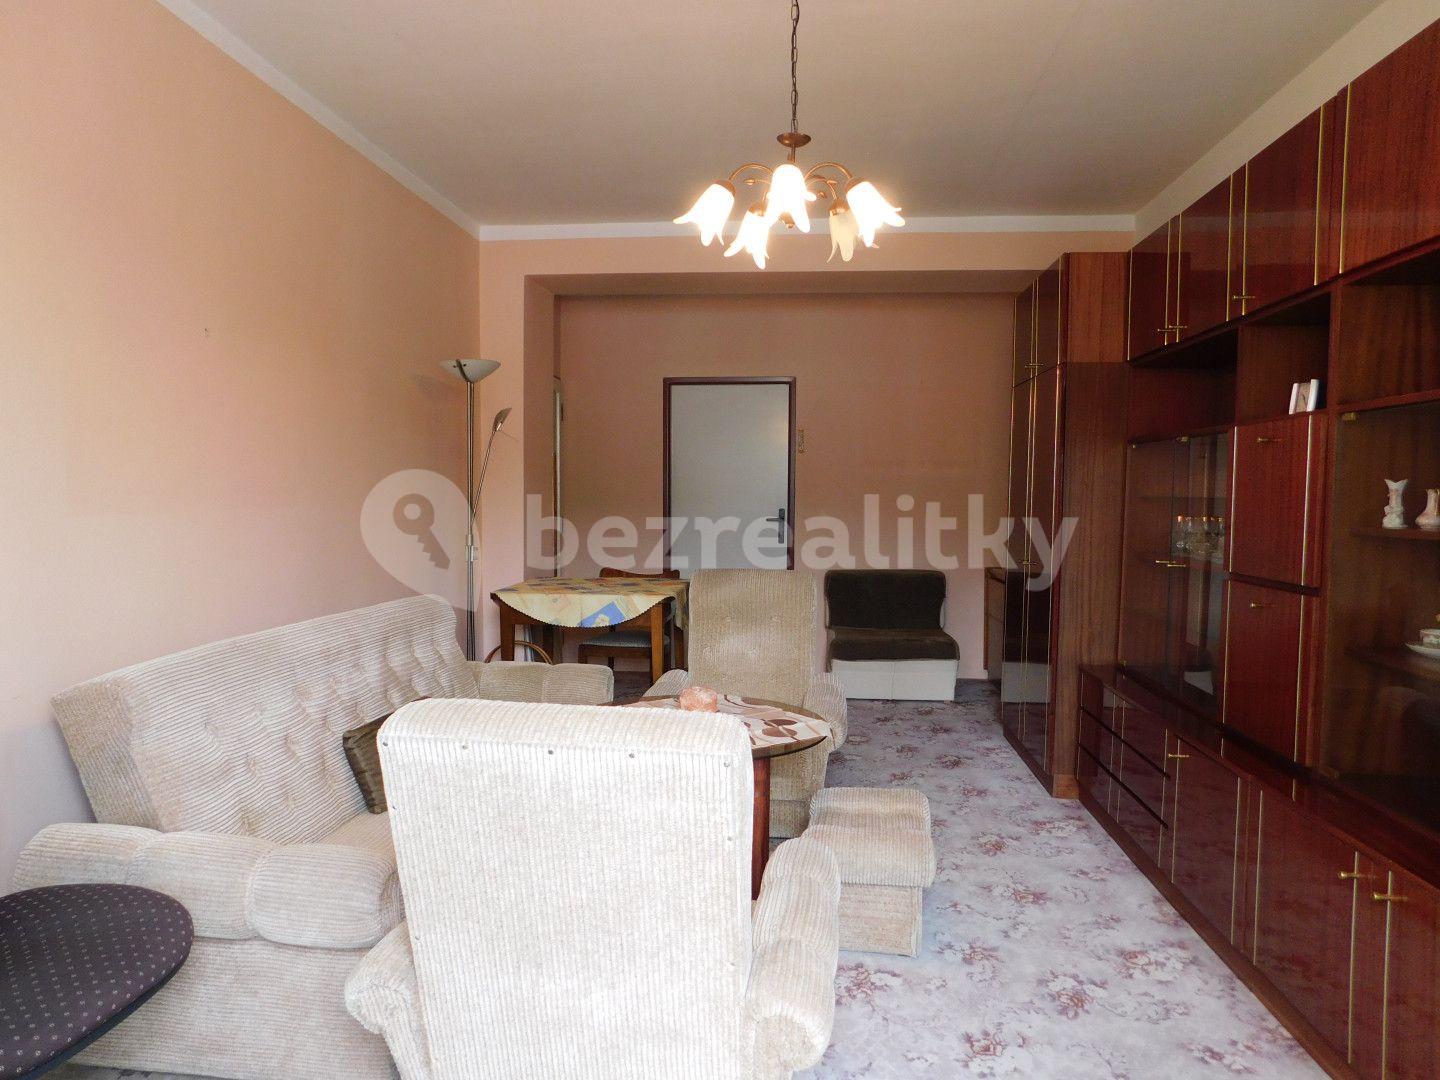 2 bedroom flat for sale, 55 m², Smetanova, Blansko, Jihomoravský Region